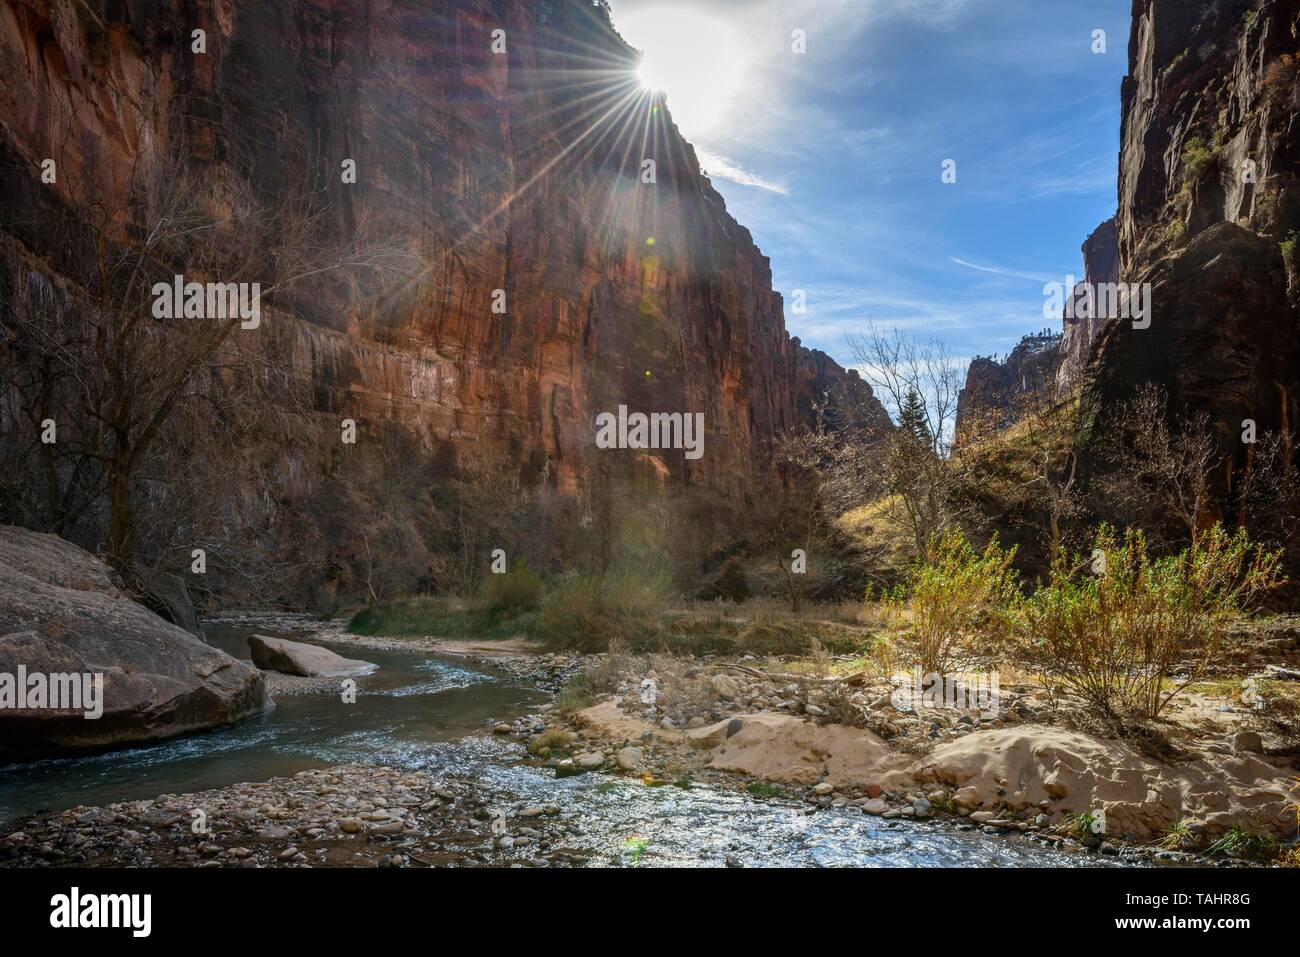 Sun shines over rock face, River Virgin River flows through Zion Canyon, Riverside Walk, The Narrows, Zion National Park, Utah, USA Stock Photo